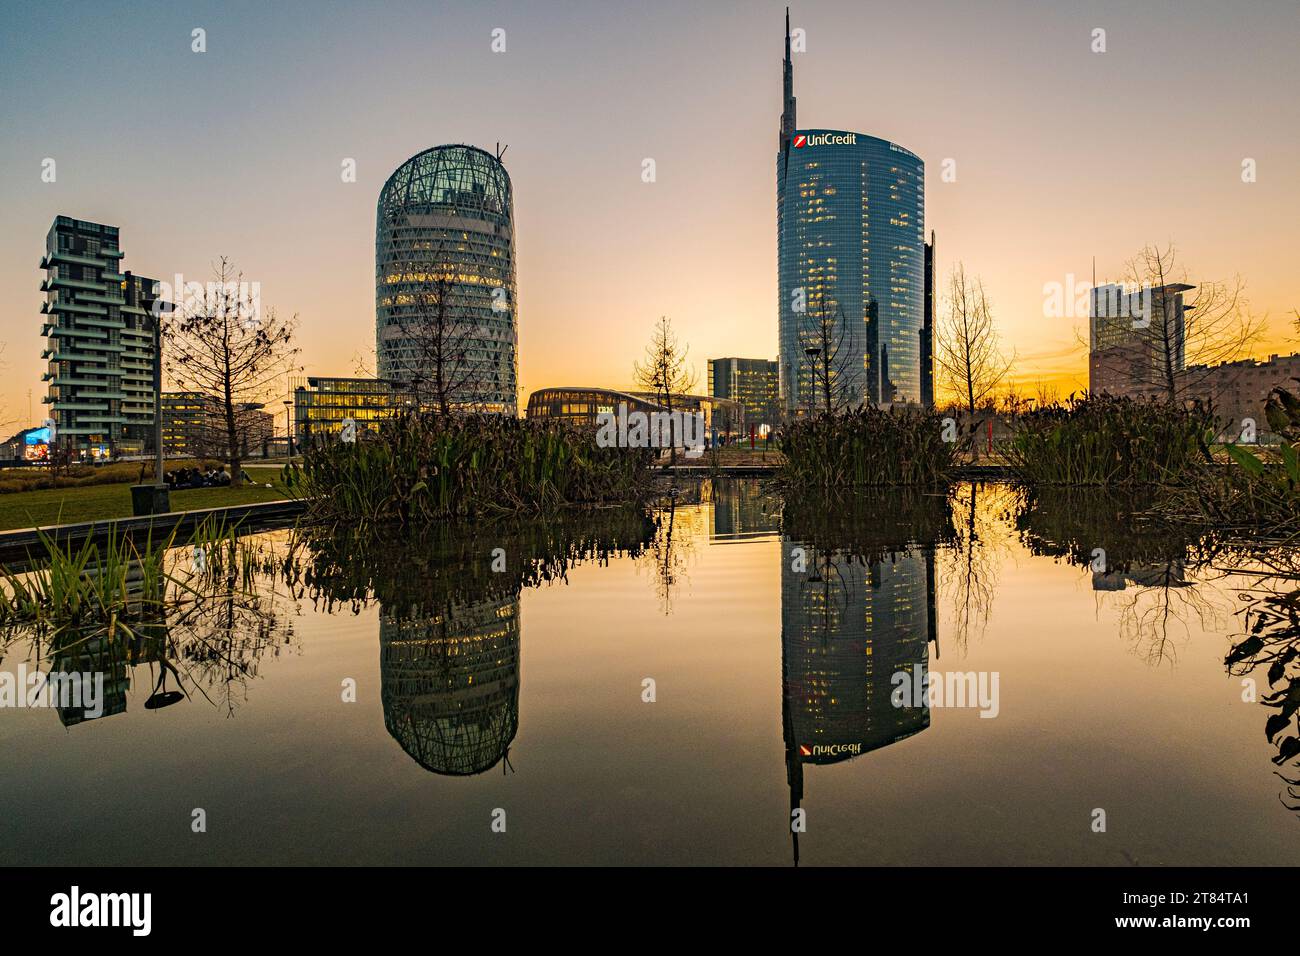 Milan, Italie. La tour emblématique et le parc public BAM. Gratte-ciel qui fait partie d'un groupe de bâtiments résidentiels et commerciaux Banque D'Images